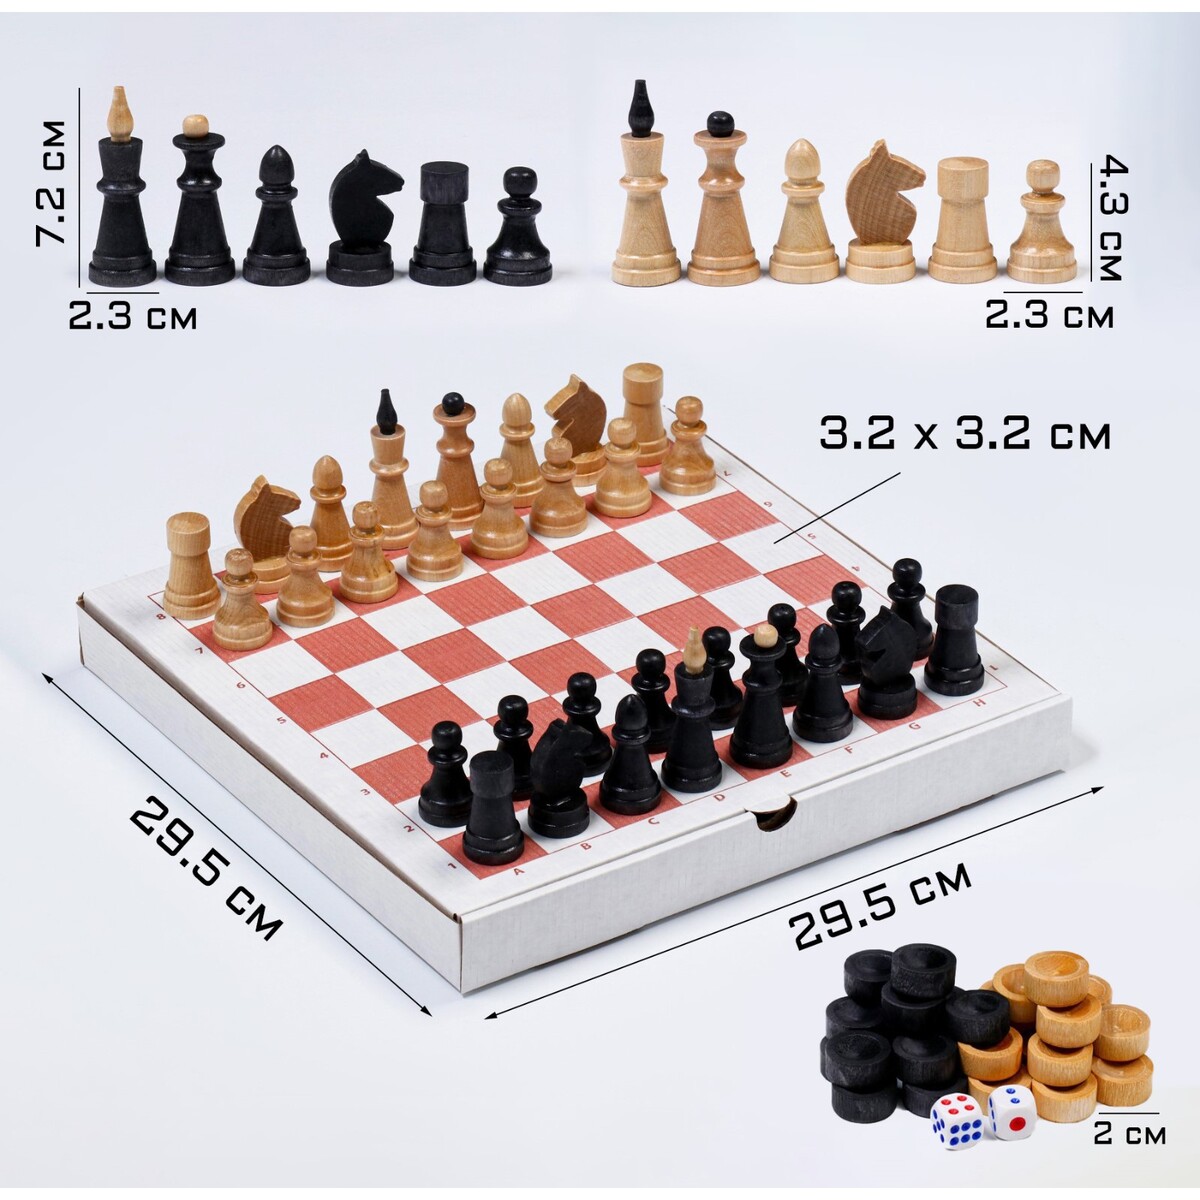 Настольная игра 3 в 1: шахматы, шашки, нарды, деревянные фигуры, доска 29.5 х 29.5 см настольная игра 2 в 1 потапыч шашки нарды доска 40х40 см